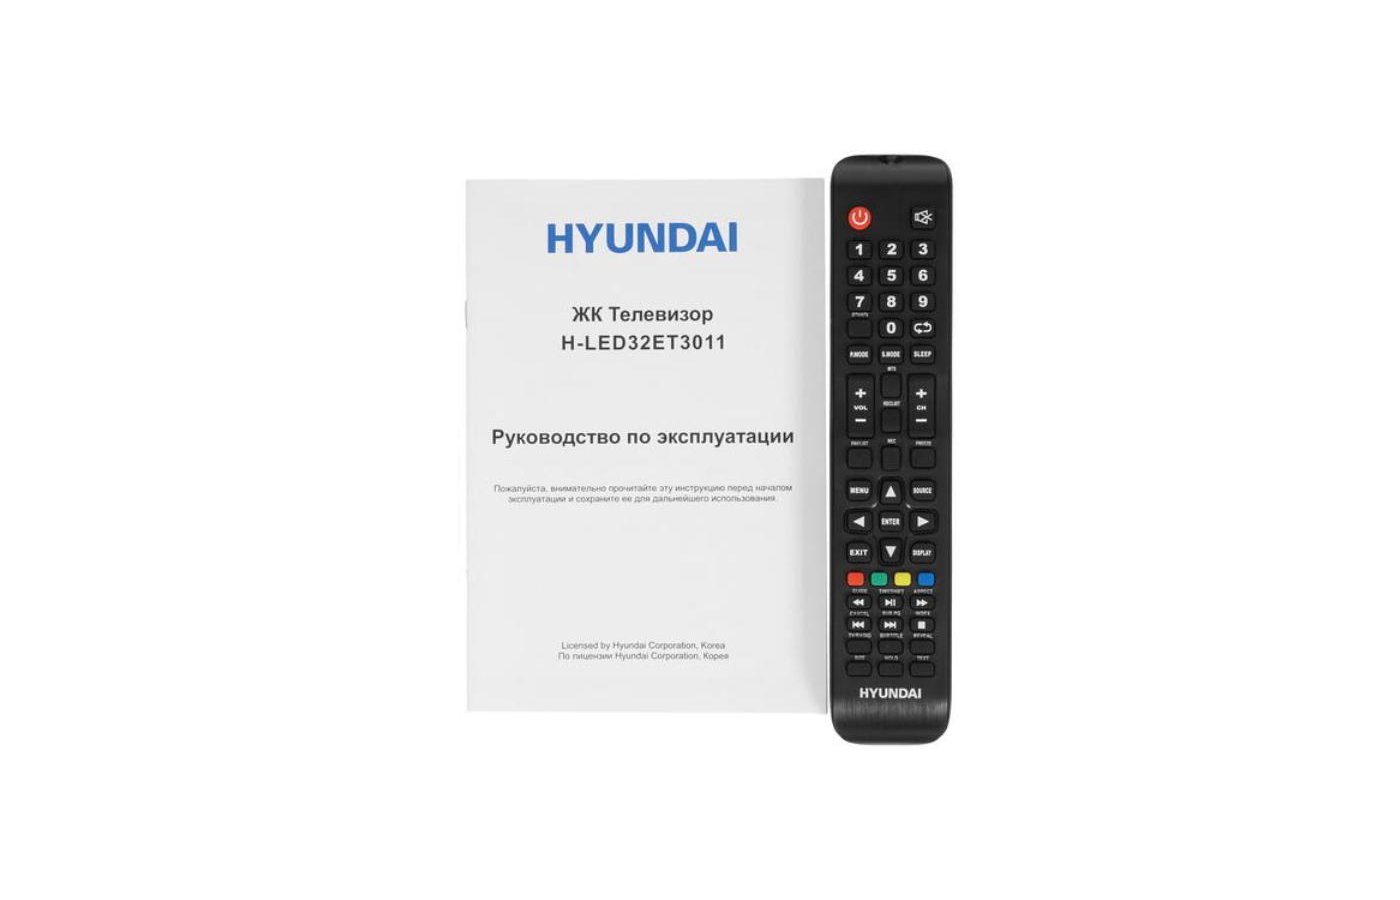 Телевизор hyundai led32bs5003. Телевизор Hyundai h-led32et3011. Телевизор Hyundai h-led32et3011 разъём для антенны. Характеристики Hyundai h-led32et3011 2020 led -. Телевизор Hyundai h-led32bs5003 отзывы.